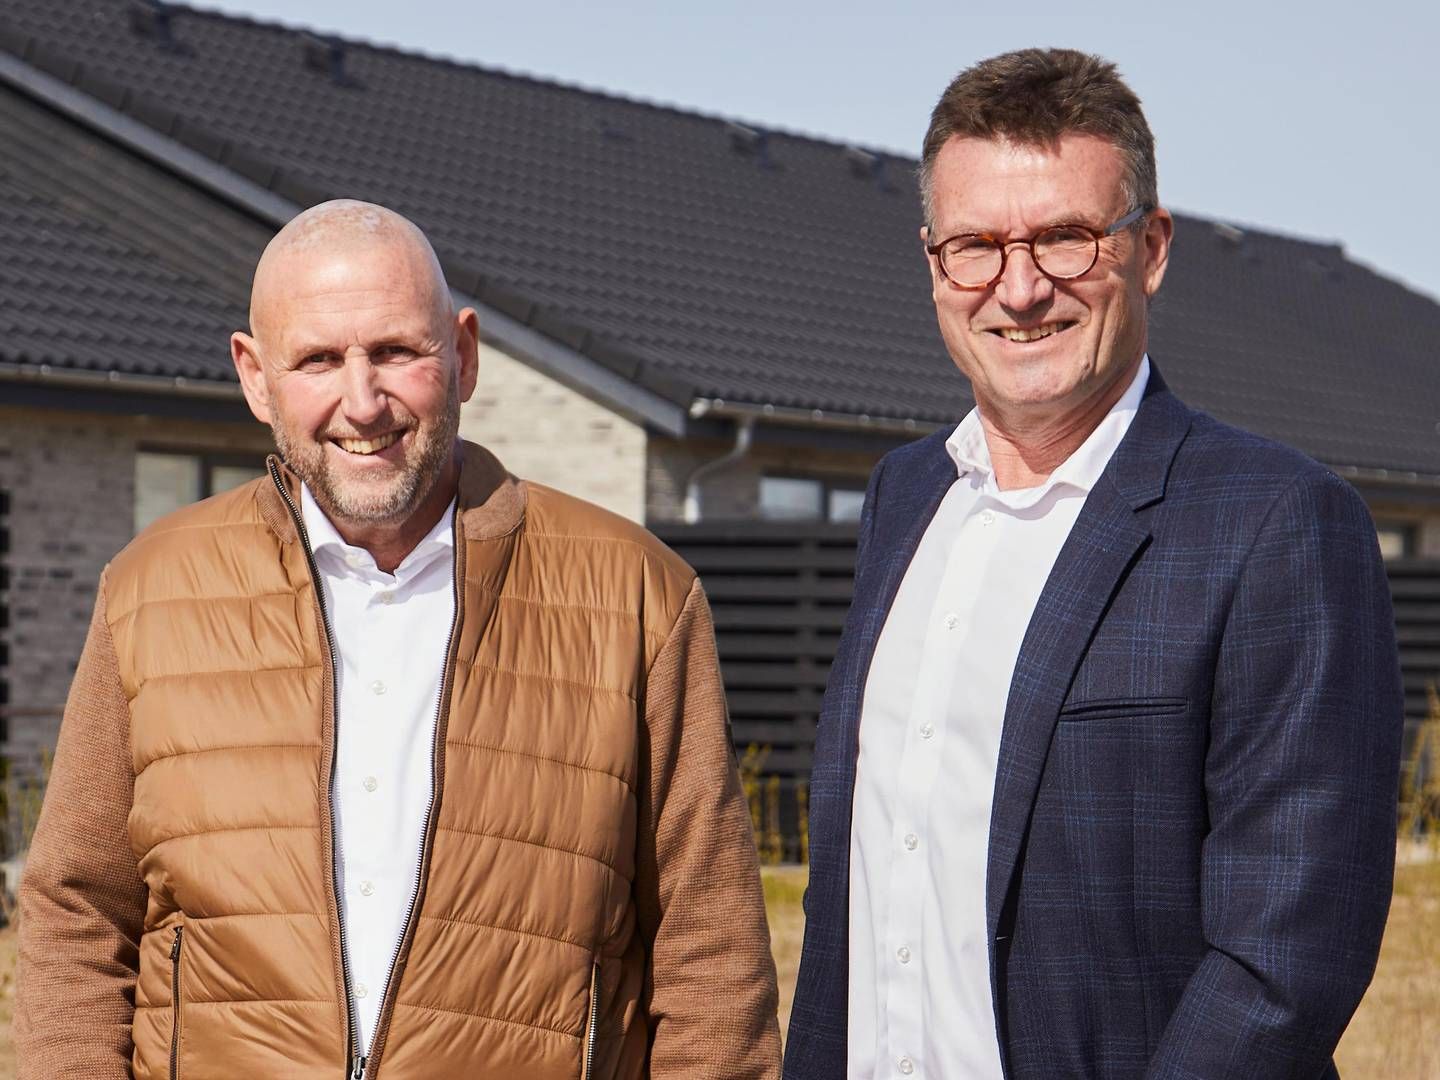 Adm. direktør og stifter af Milton Huse Erik Rehnquist (tv.) sammen med Michael Berthelsen, Niams landechef i Danmark. | Foto: PR - Milton Huse